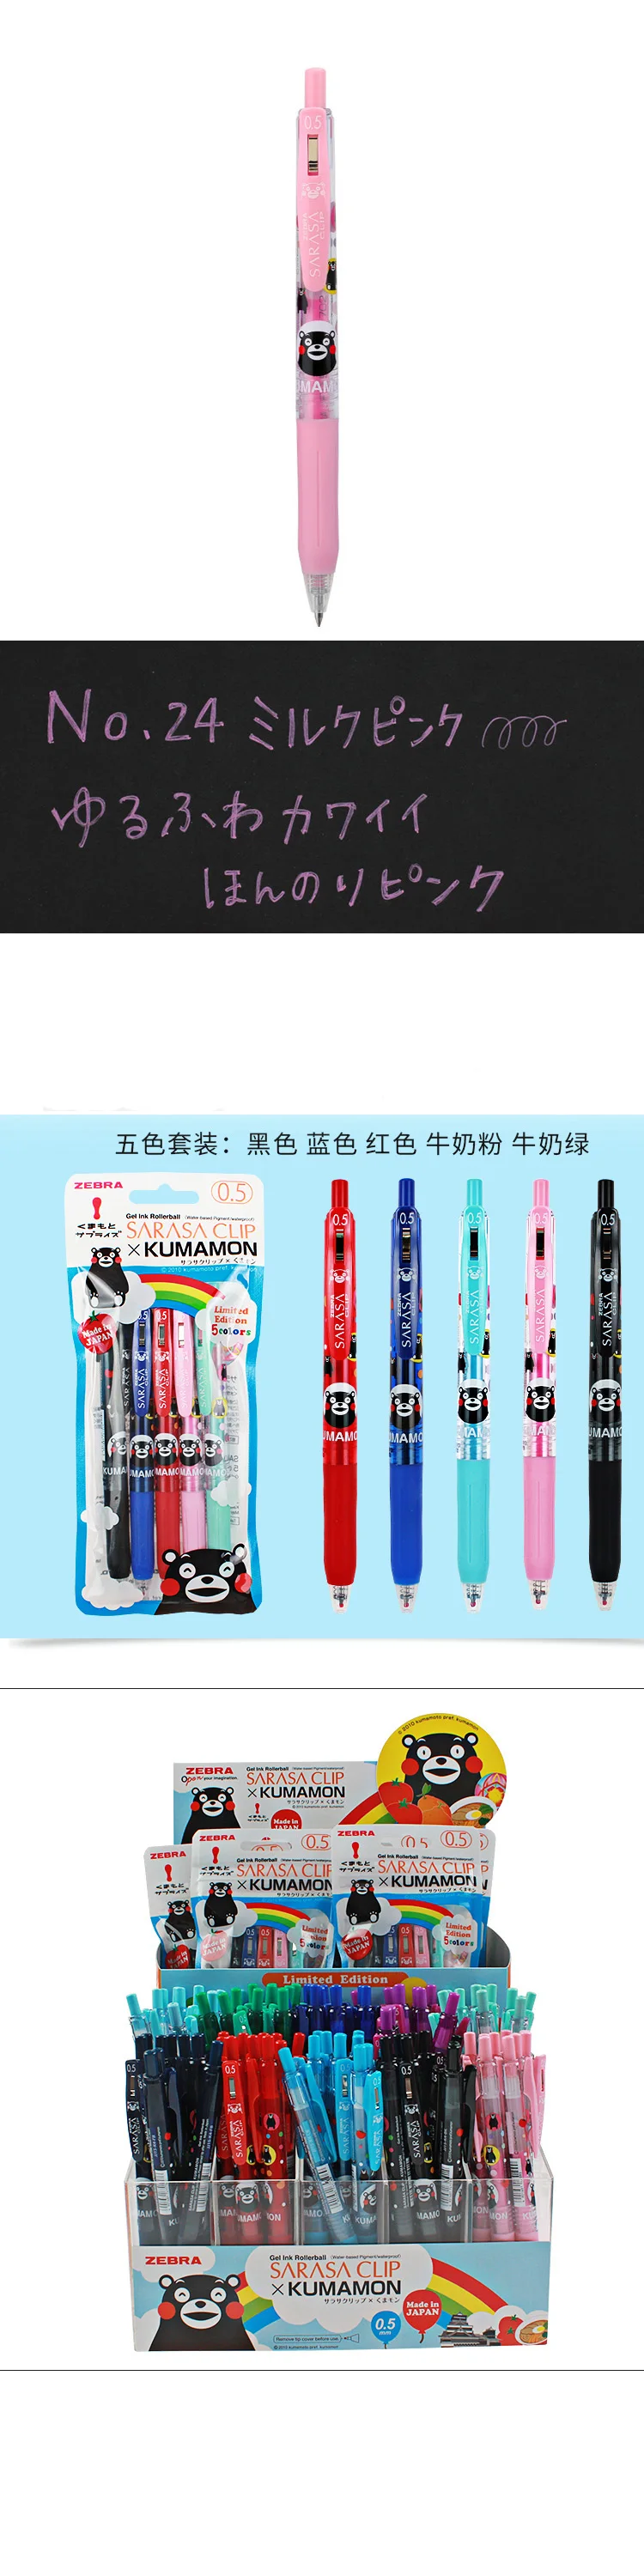 Япония Зебра X Kumamon Limited гелевая ручка SARASA клип JJ15-K4 0,5 мм 1 шт